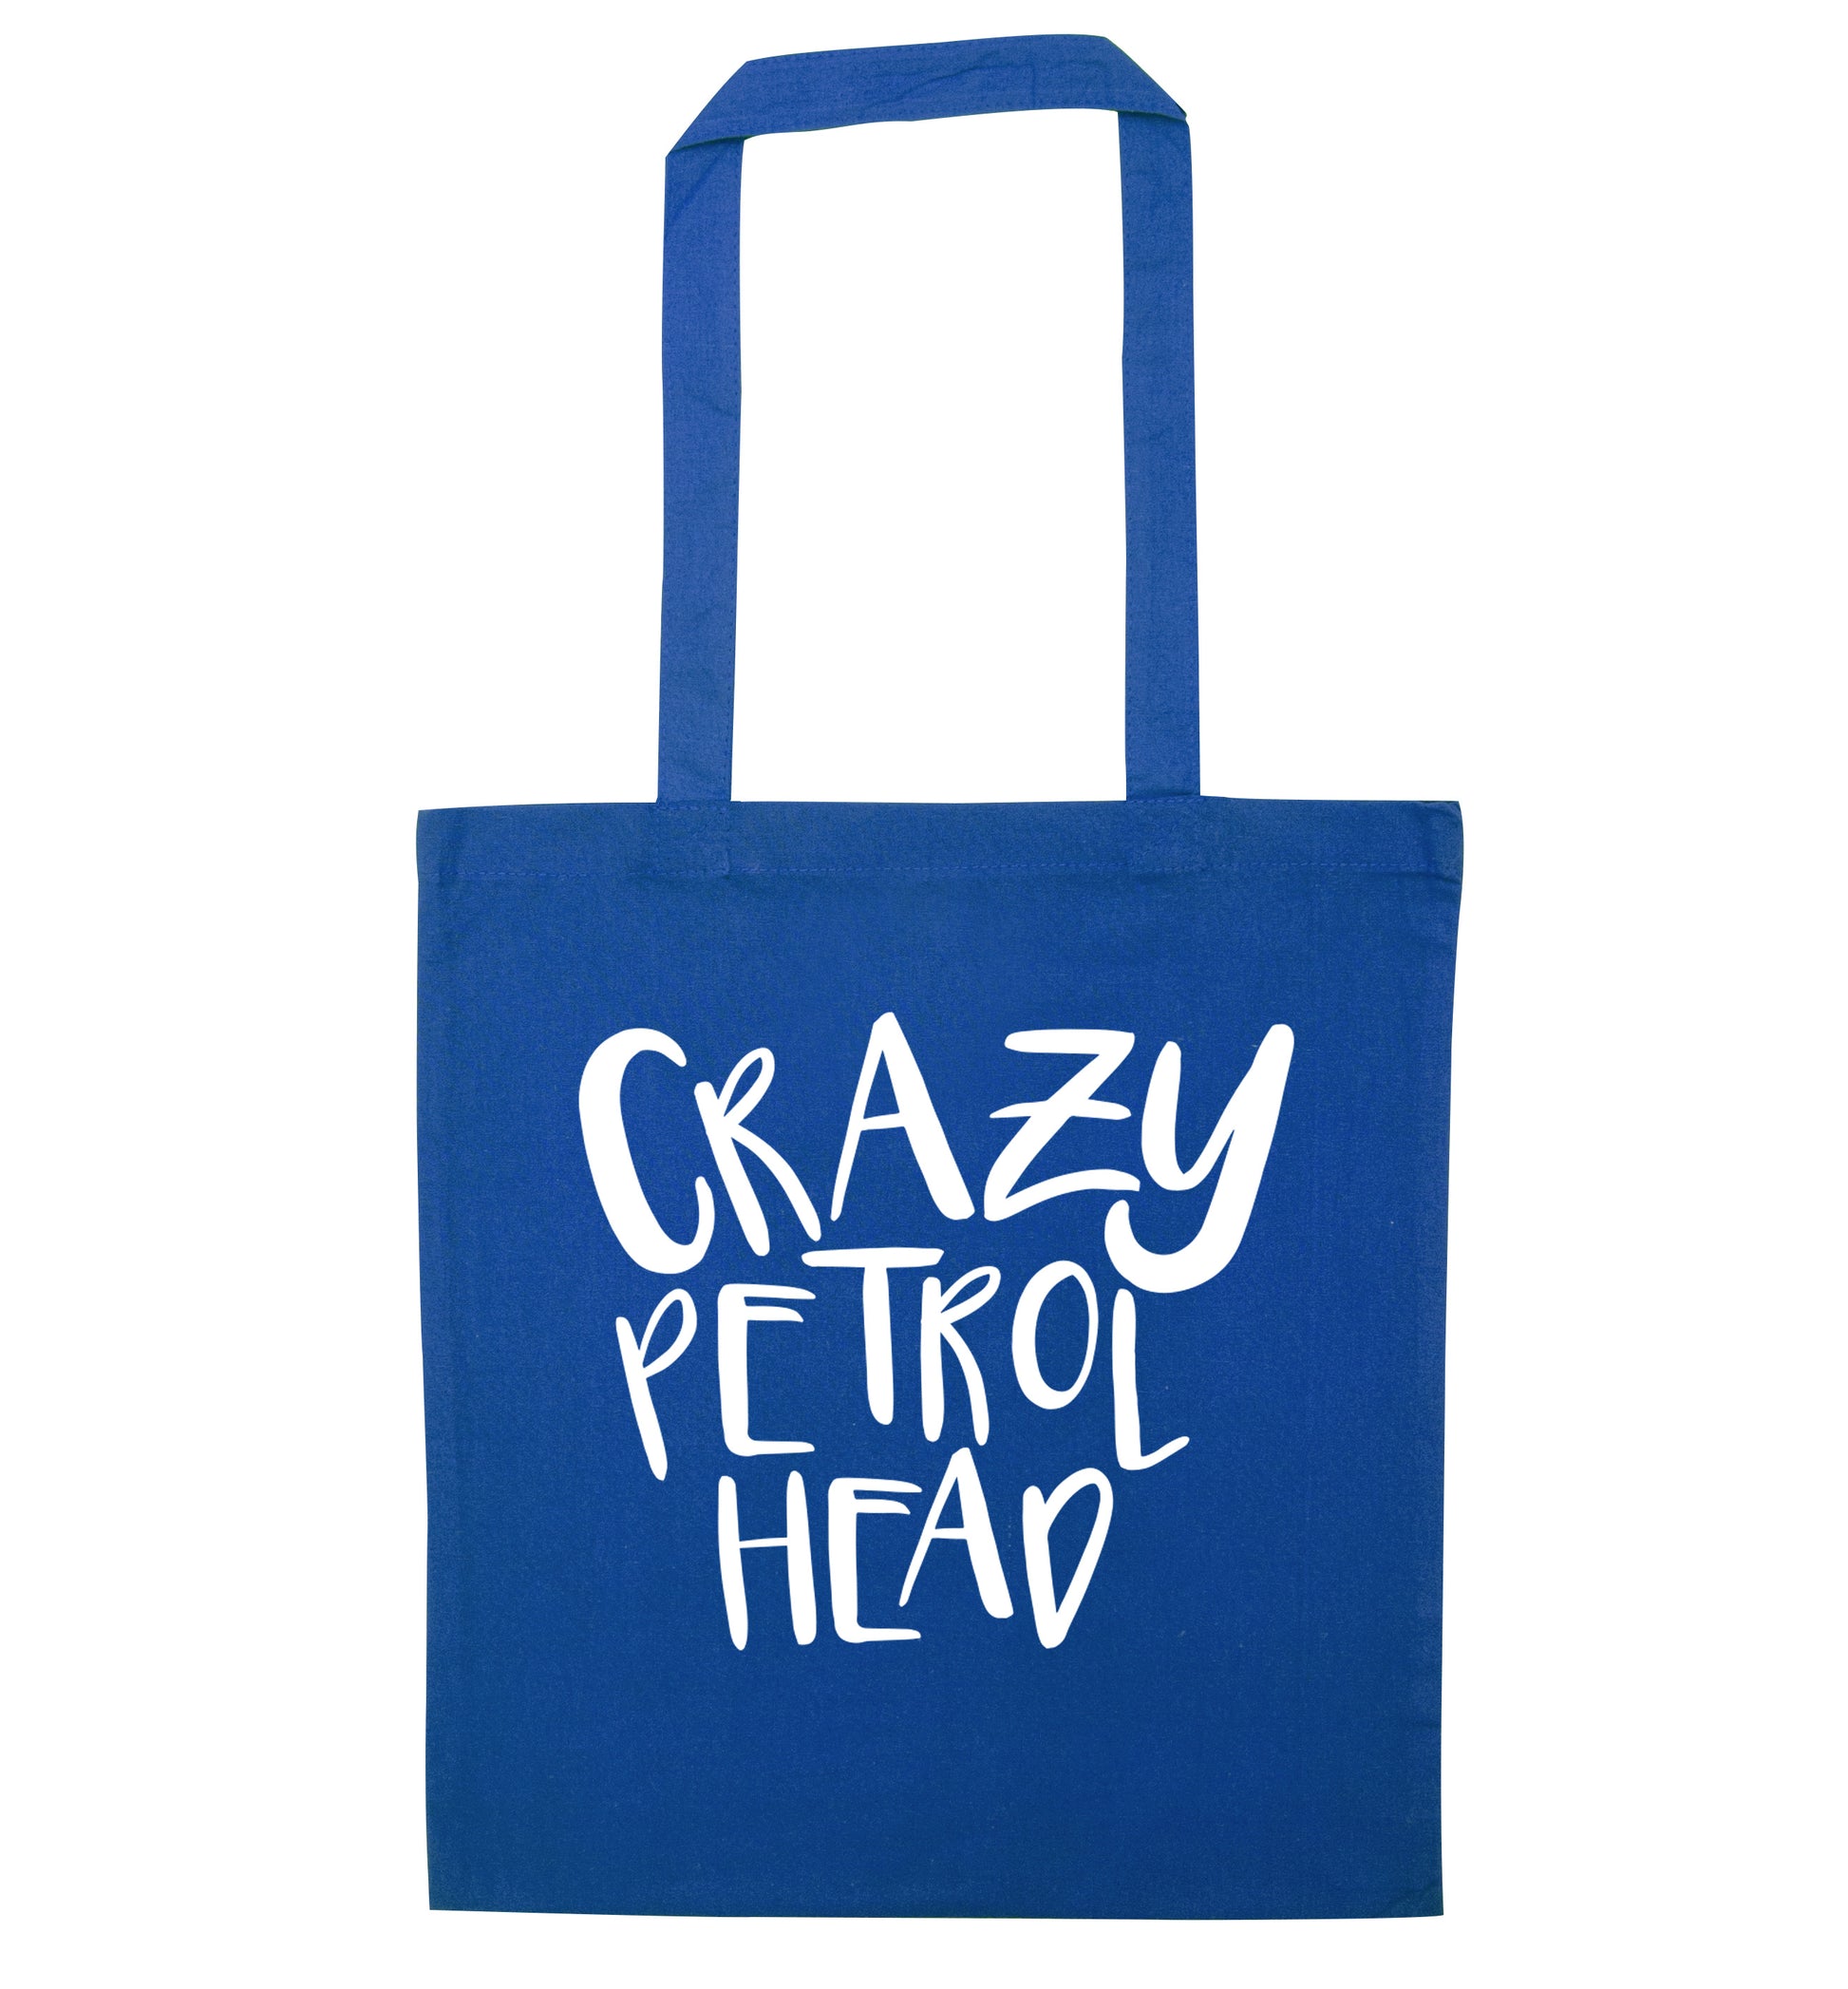 Crazy petrol head blue tote bag